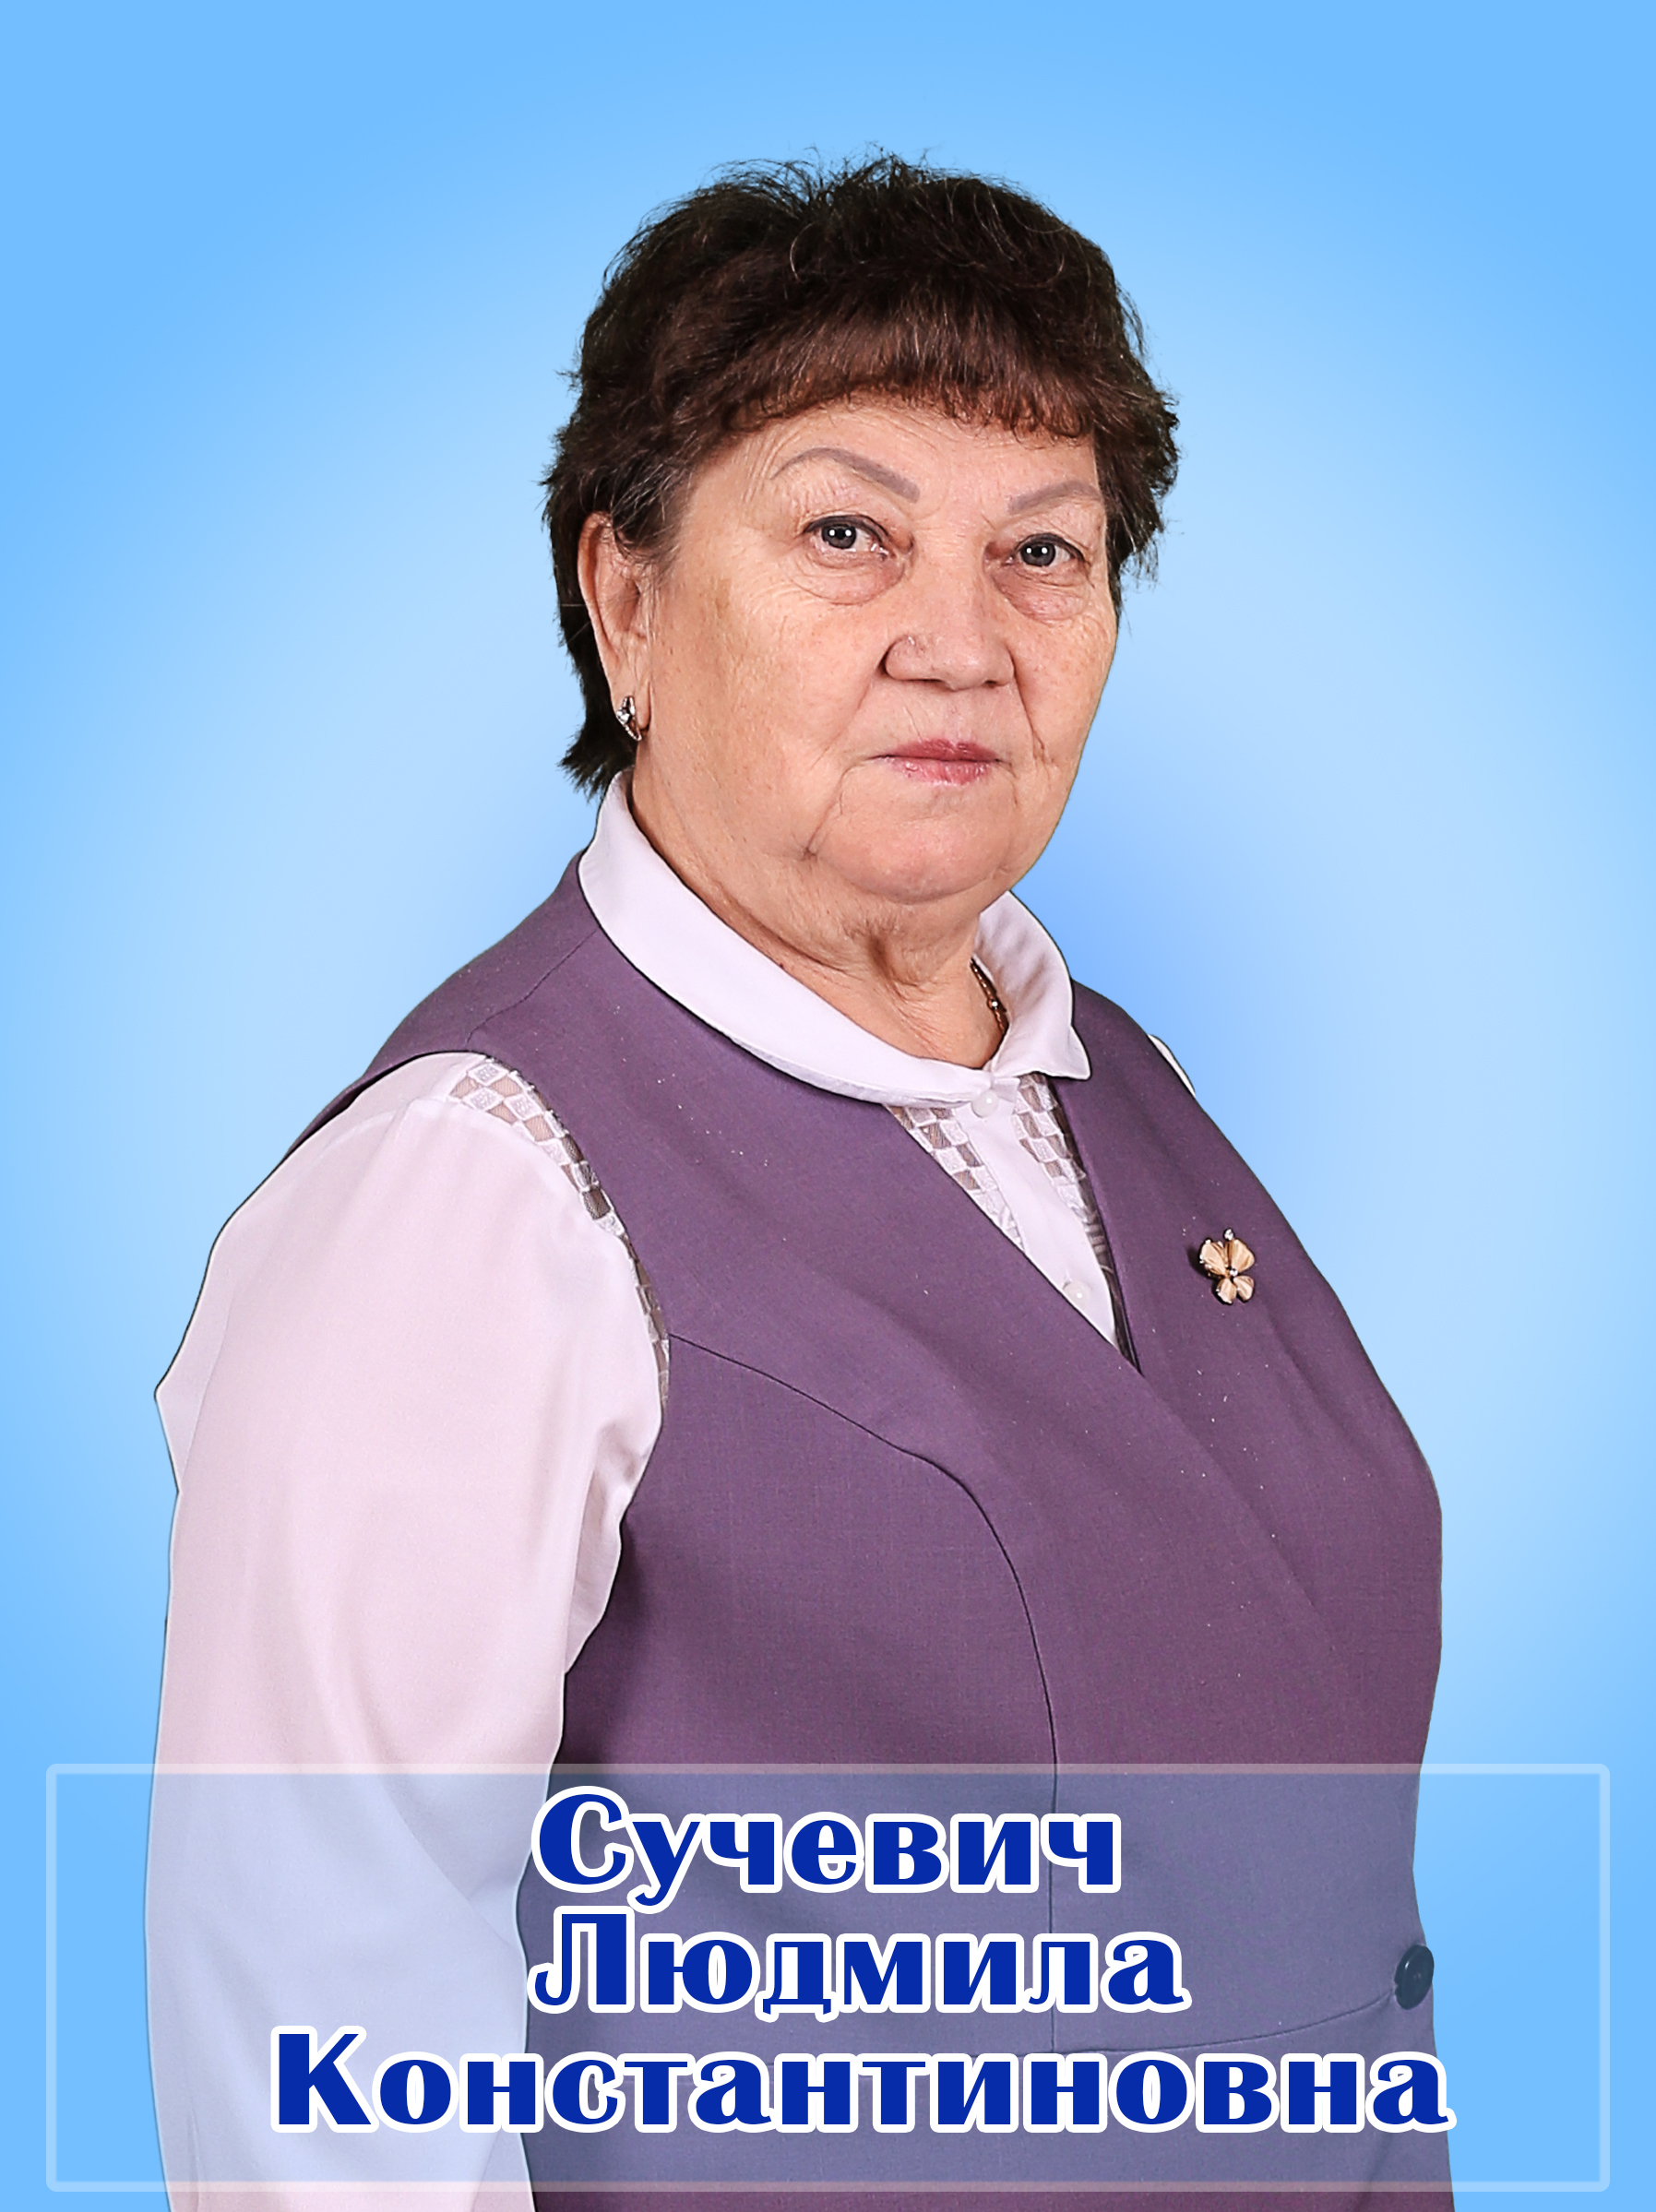 Сучевич Людмила Константиновна.